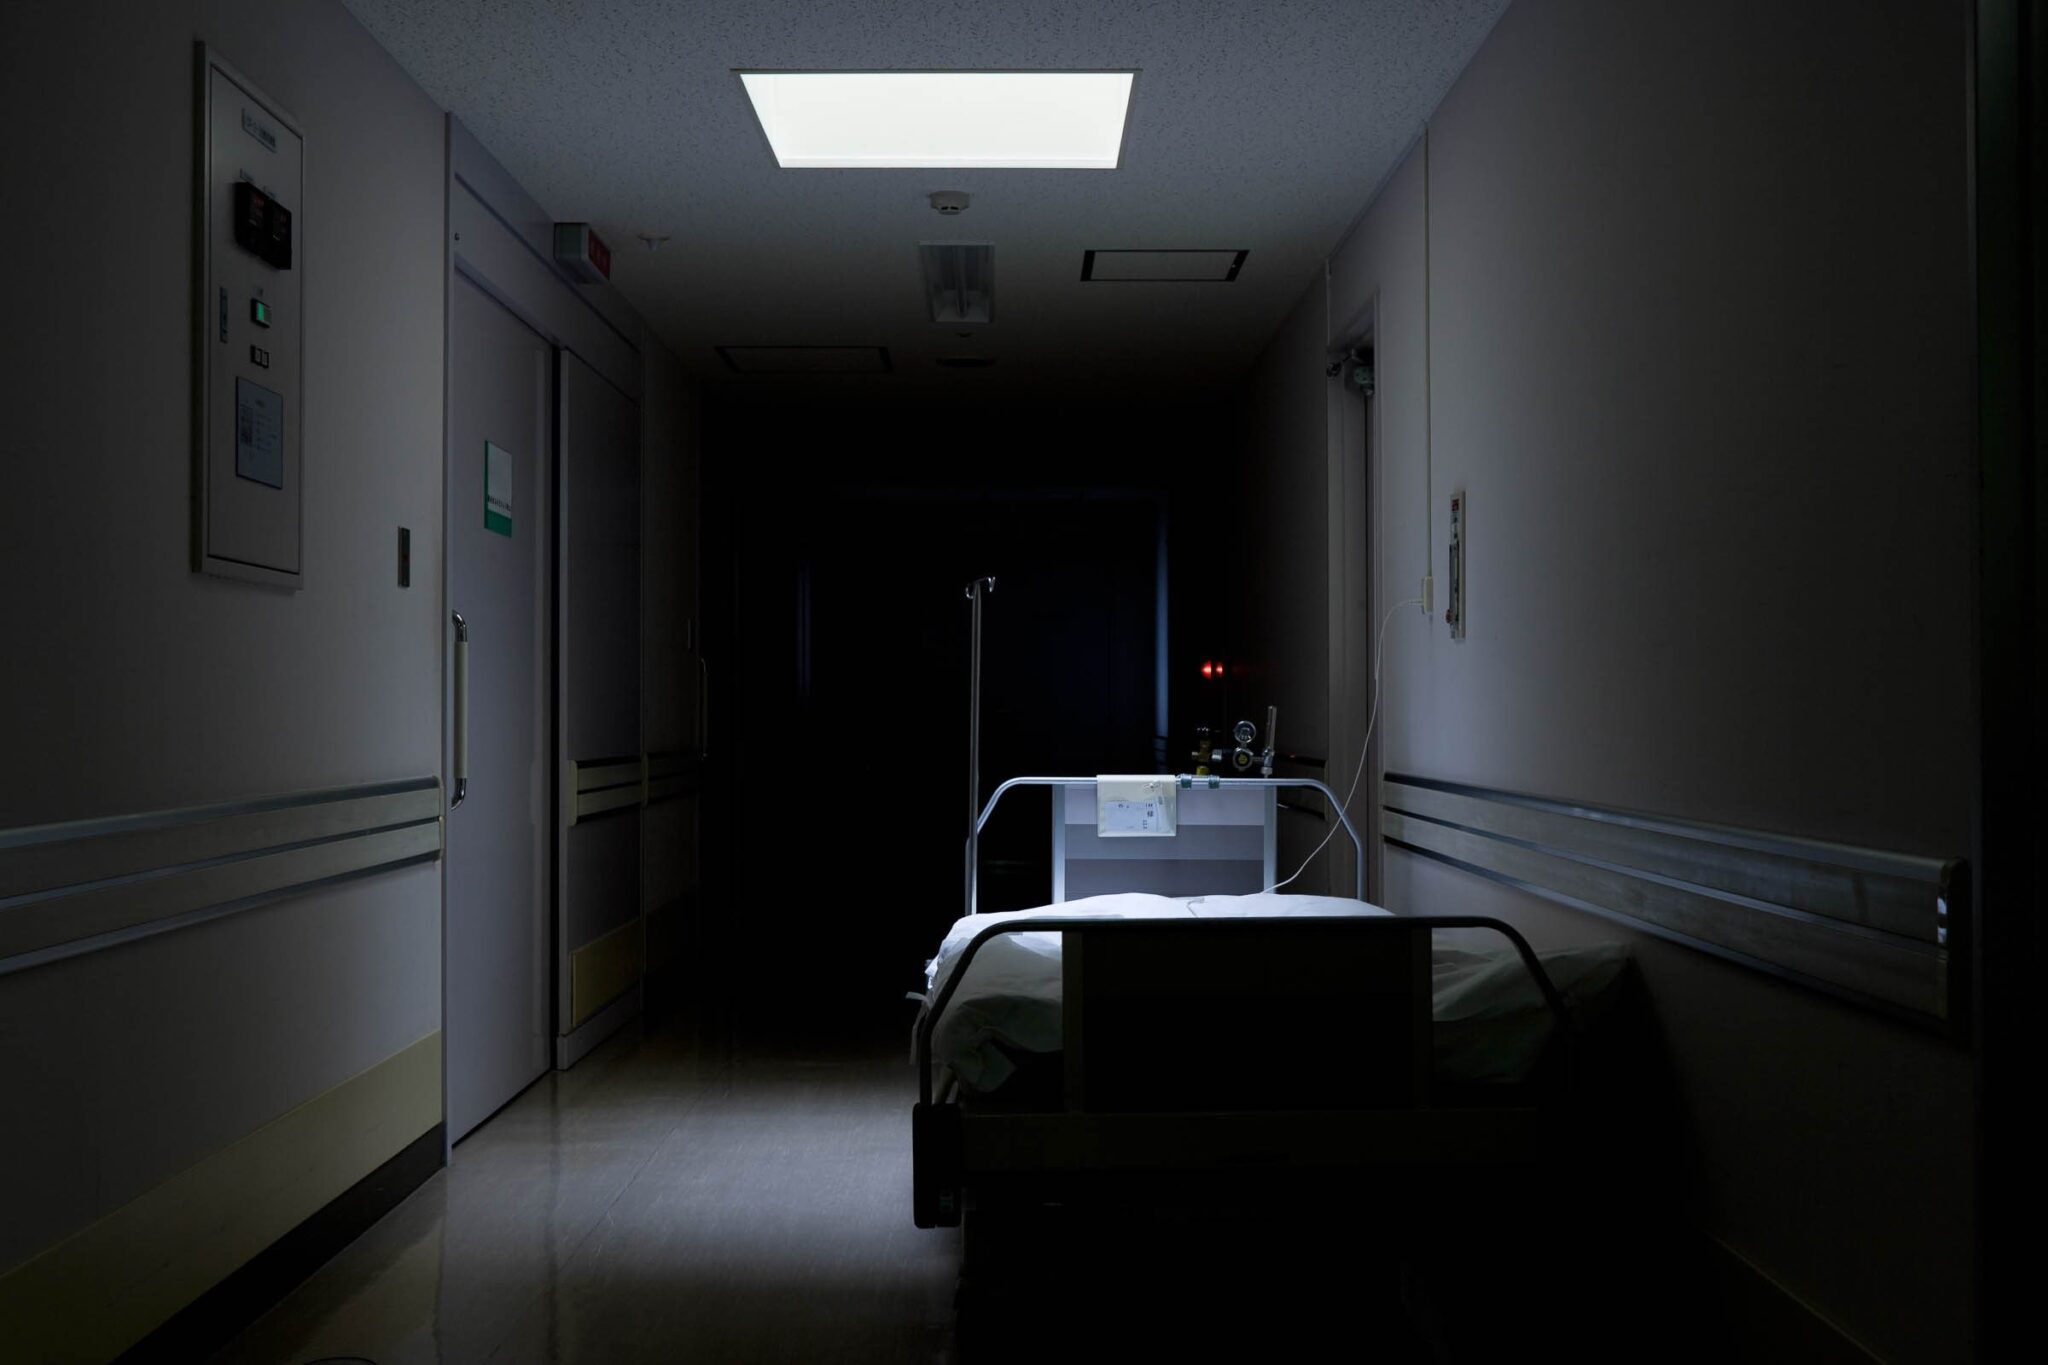 палата в больнице фото без людей